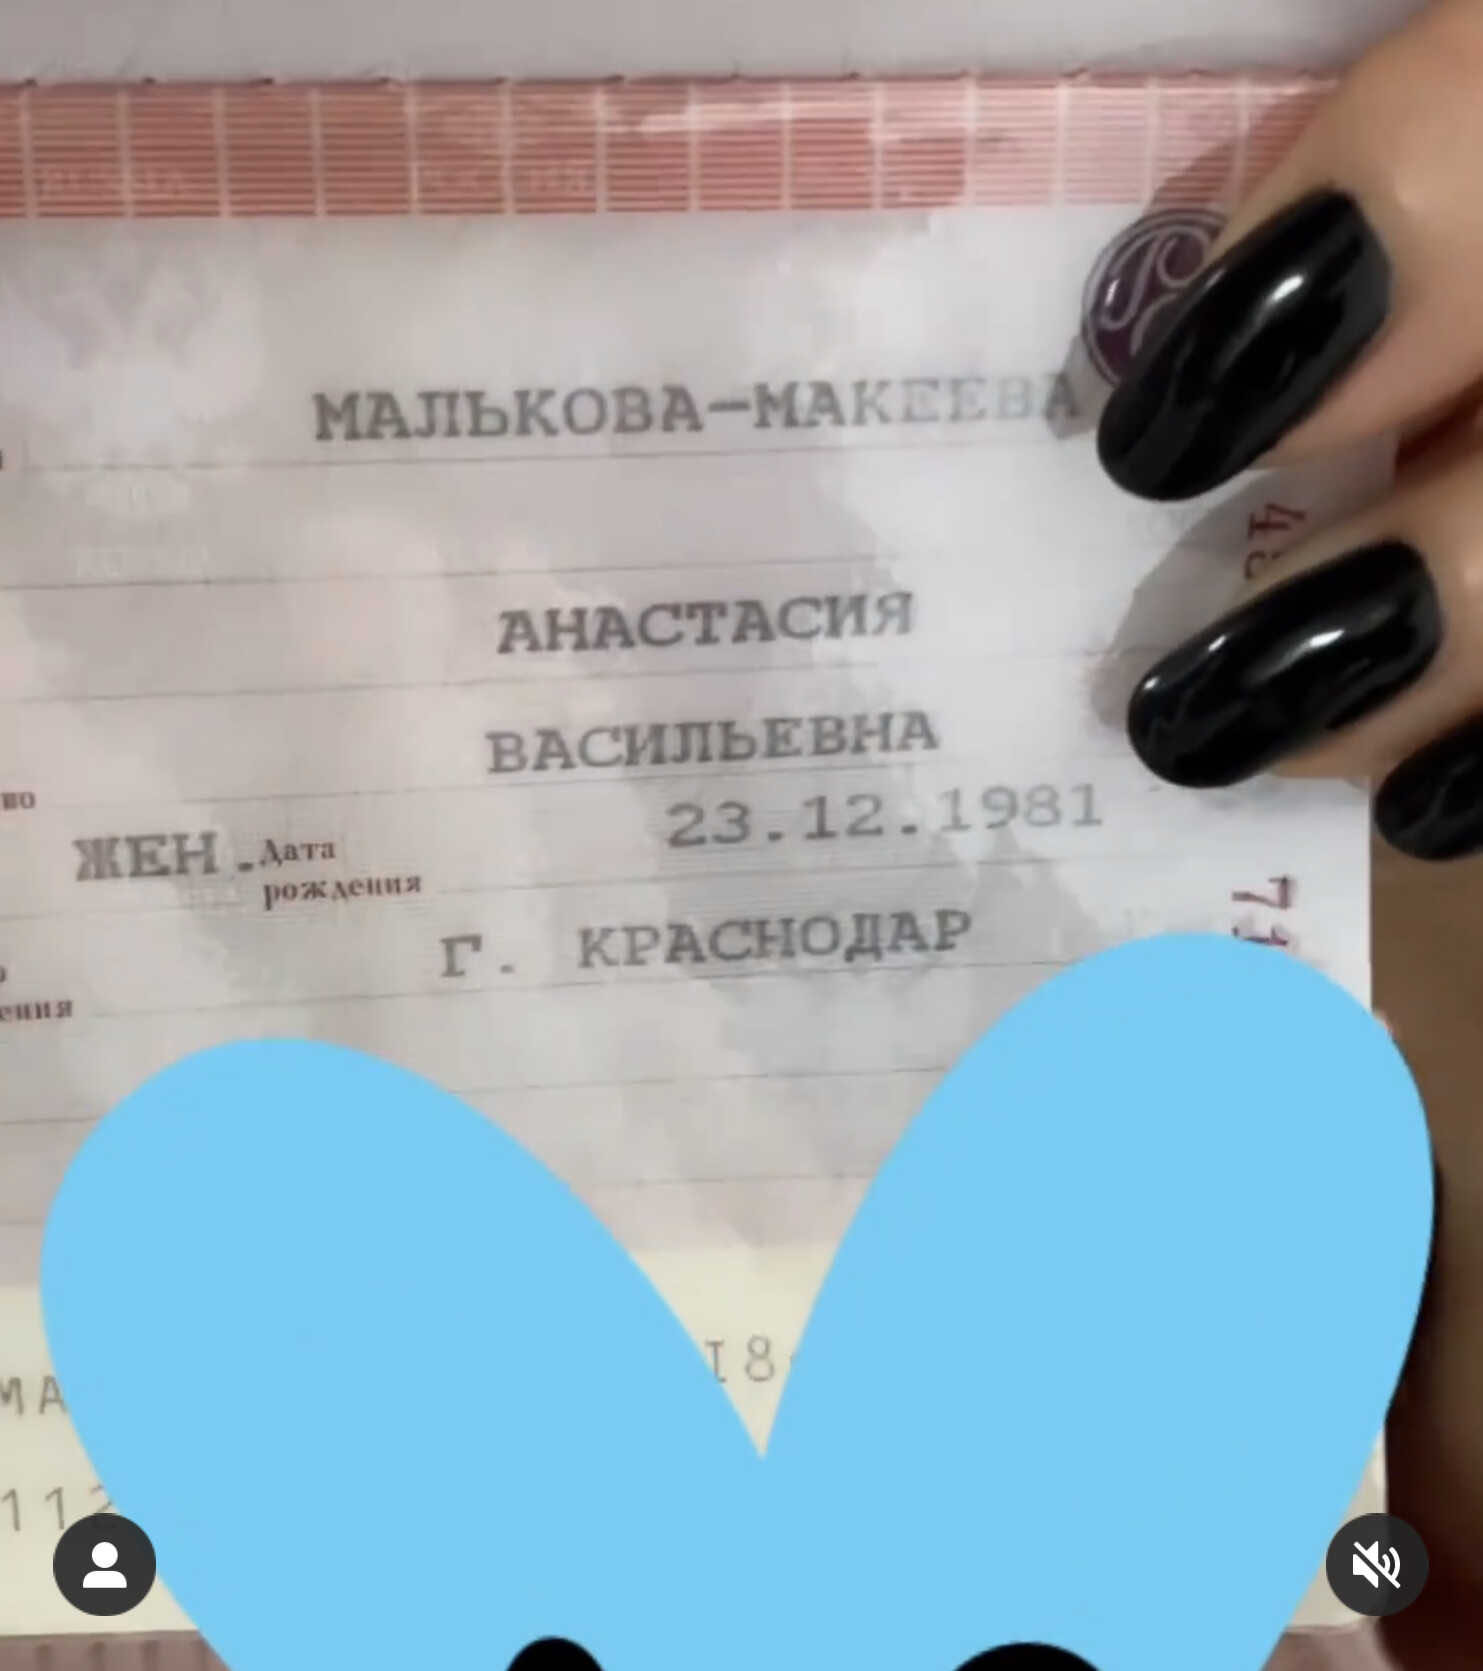 Анастасия Макеева получила паспорт с новой фамилией